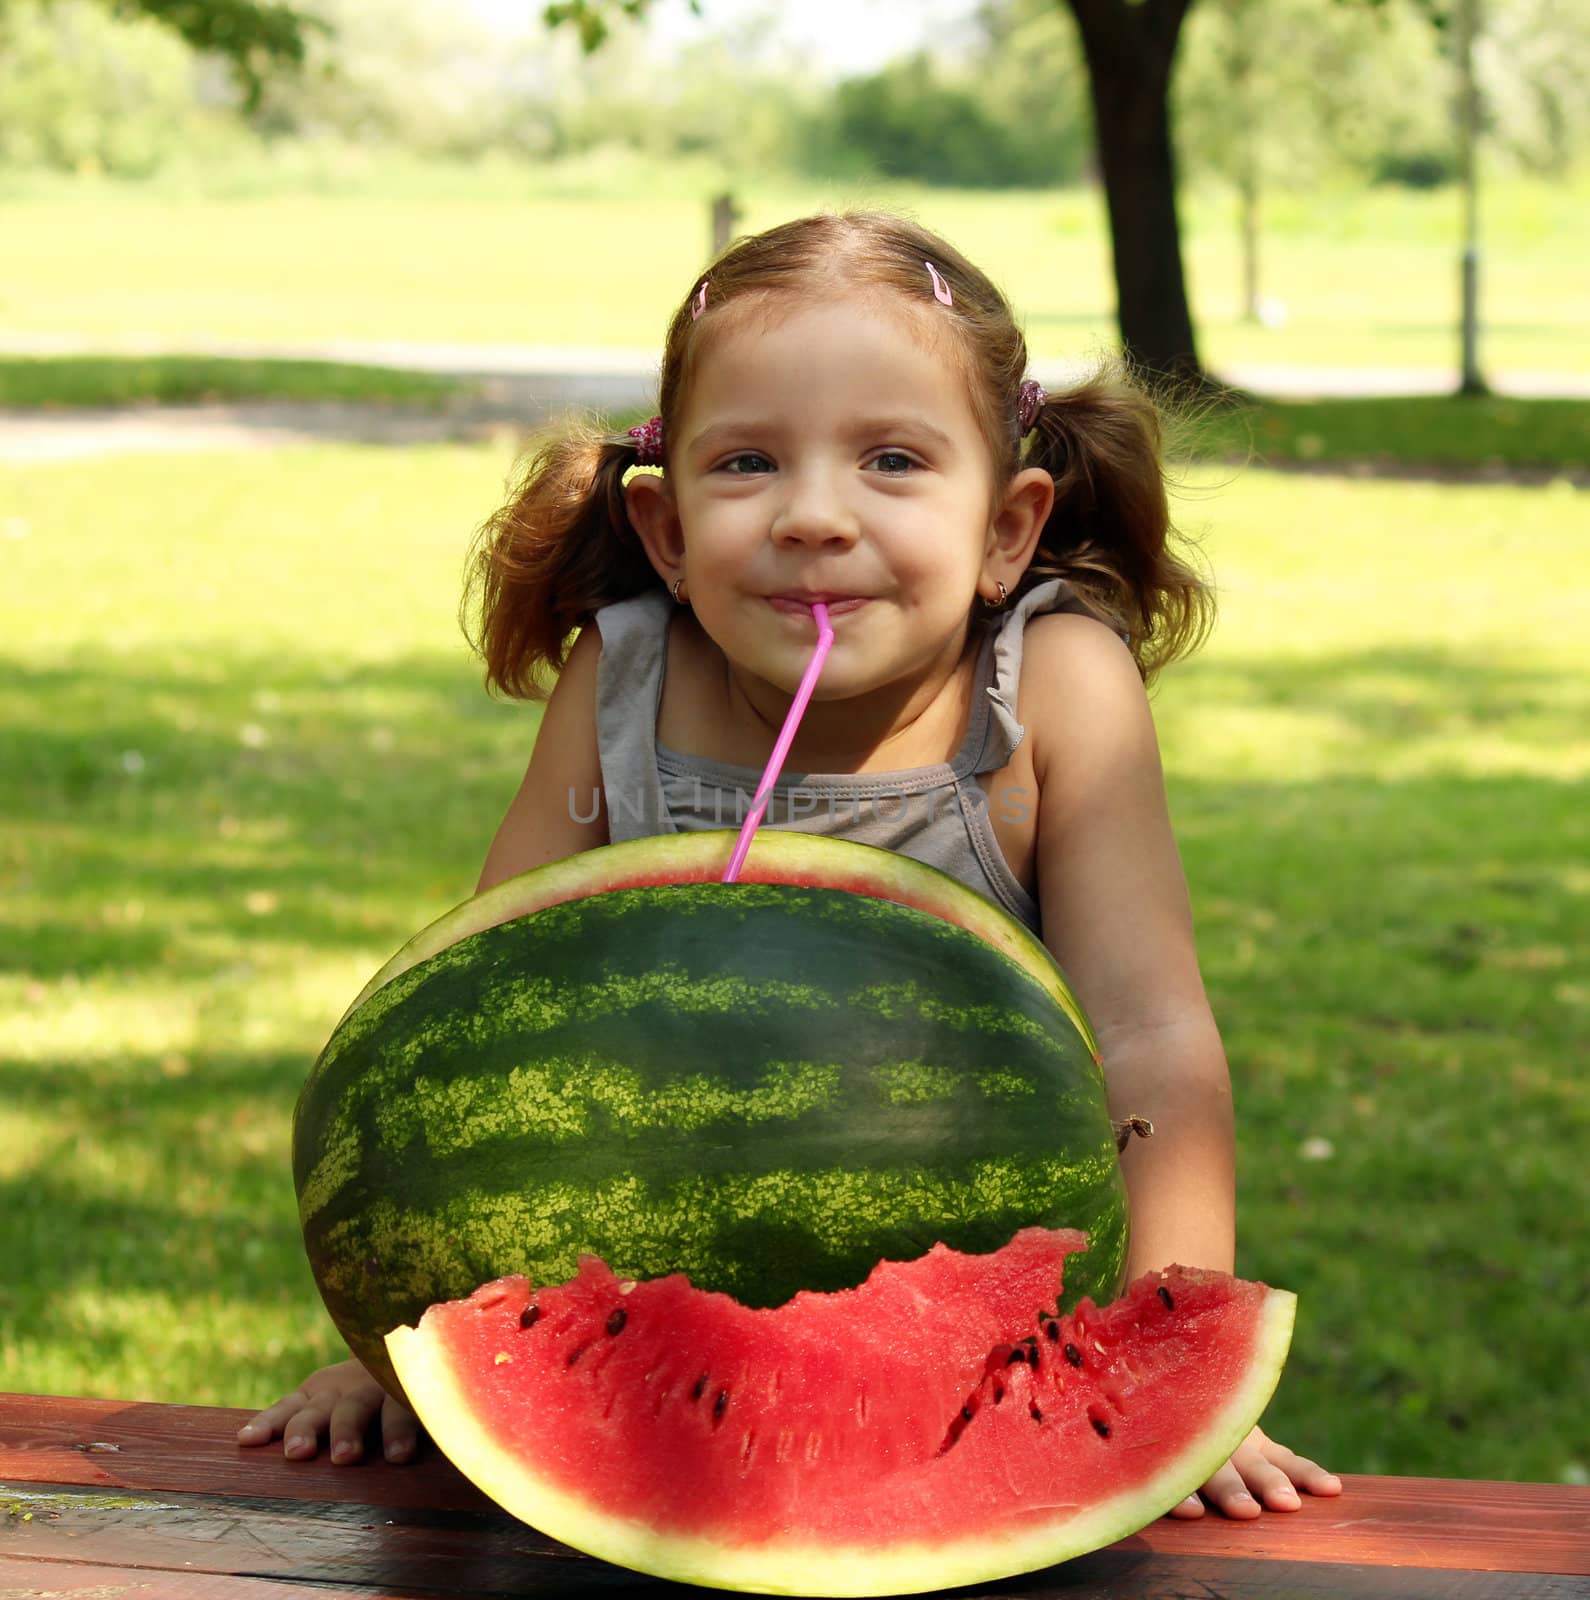 beauty little girl with watermelon summer scene by goce